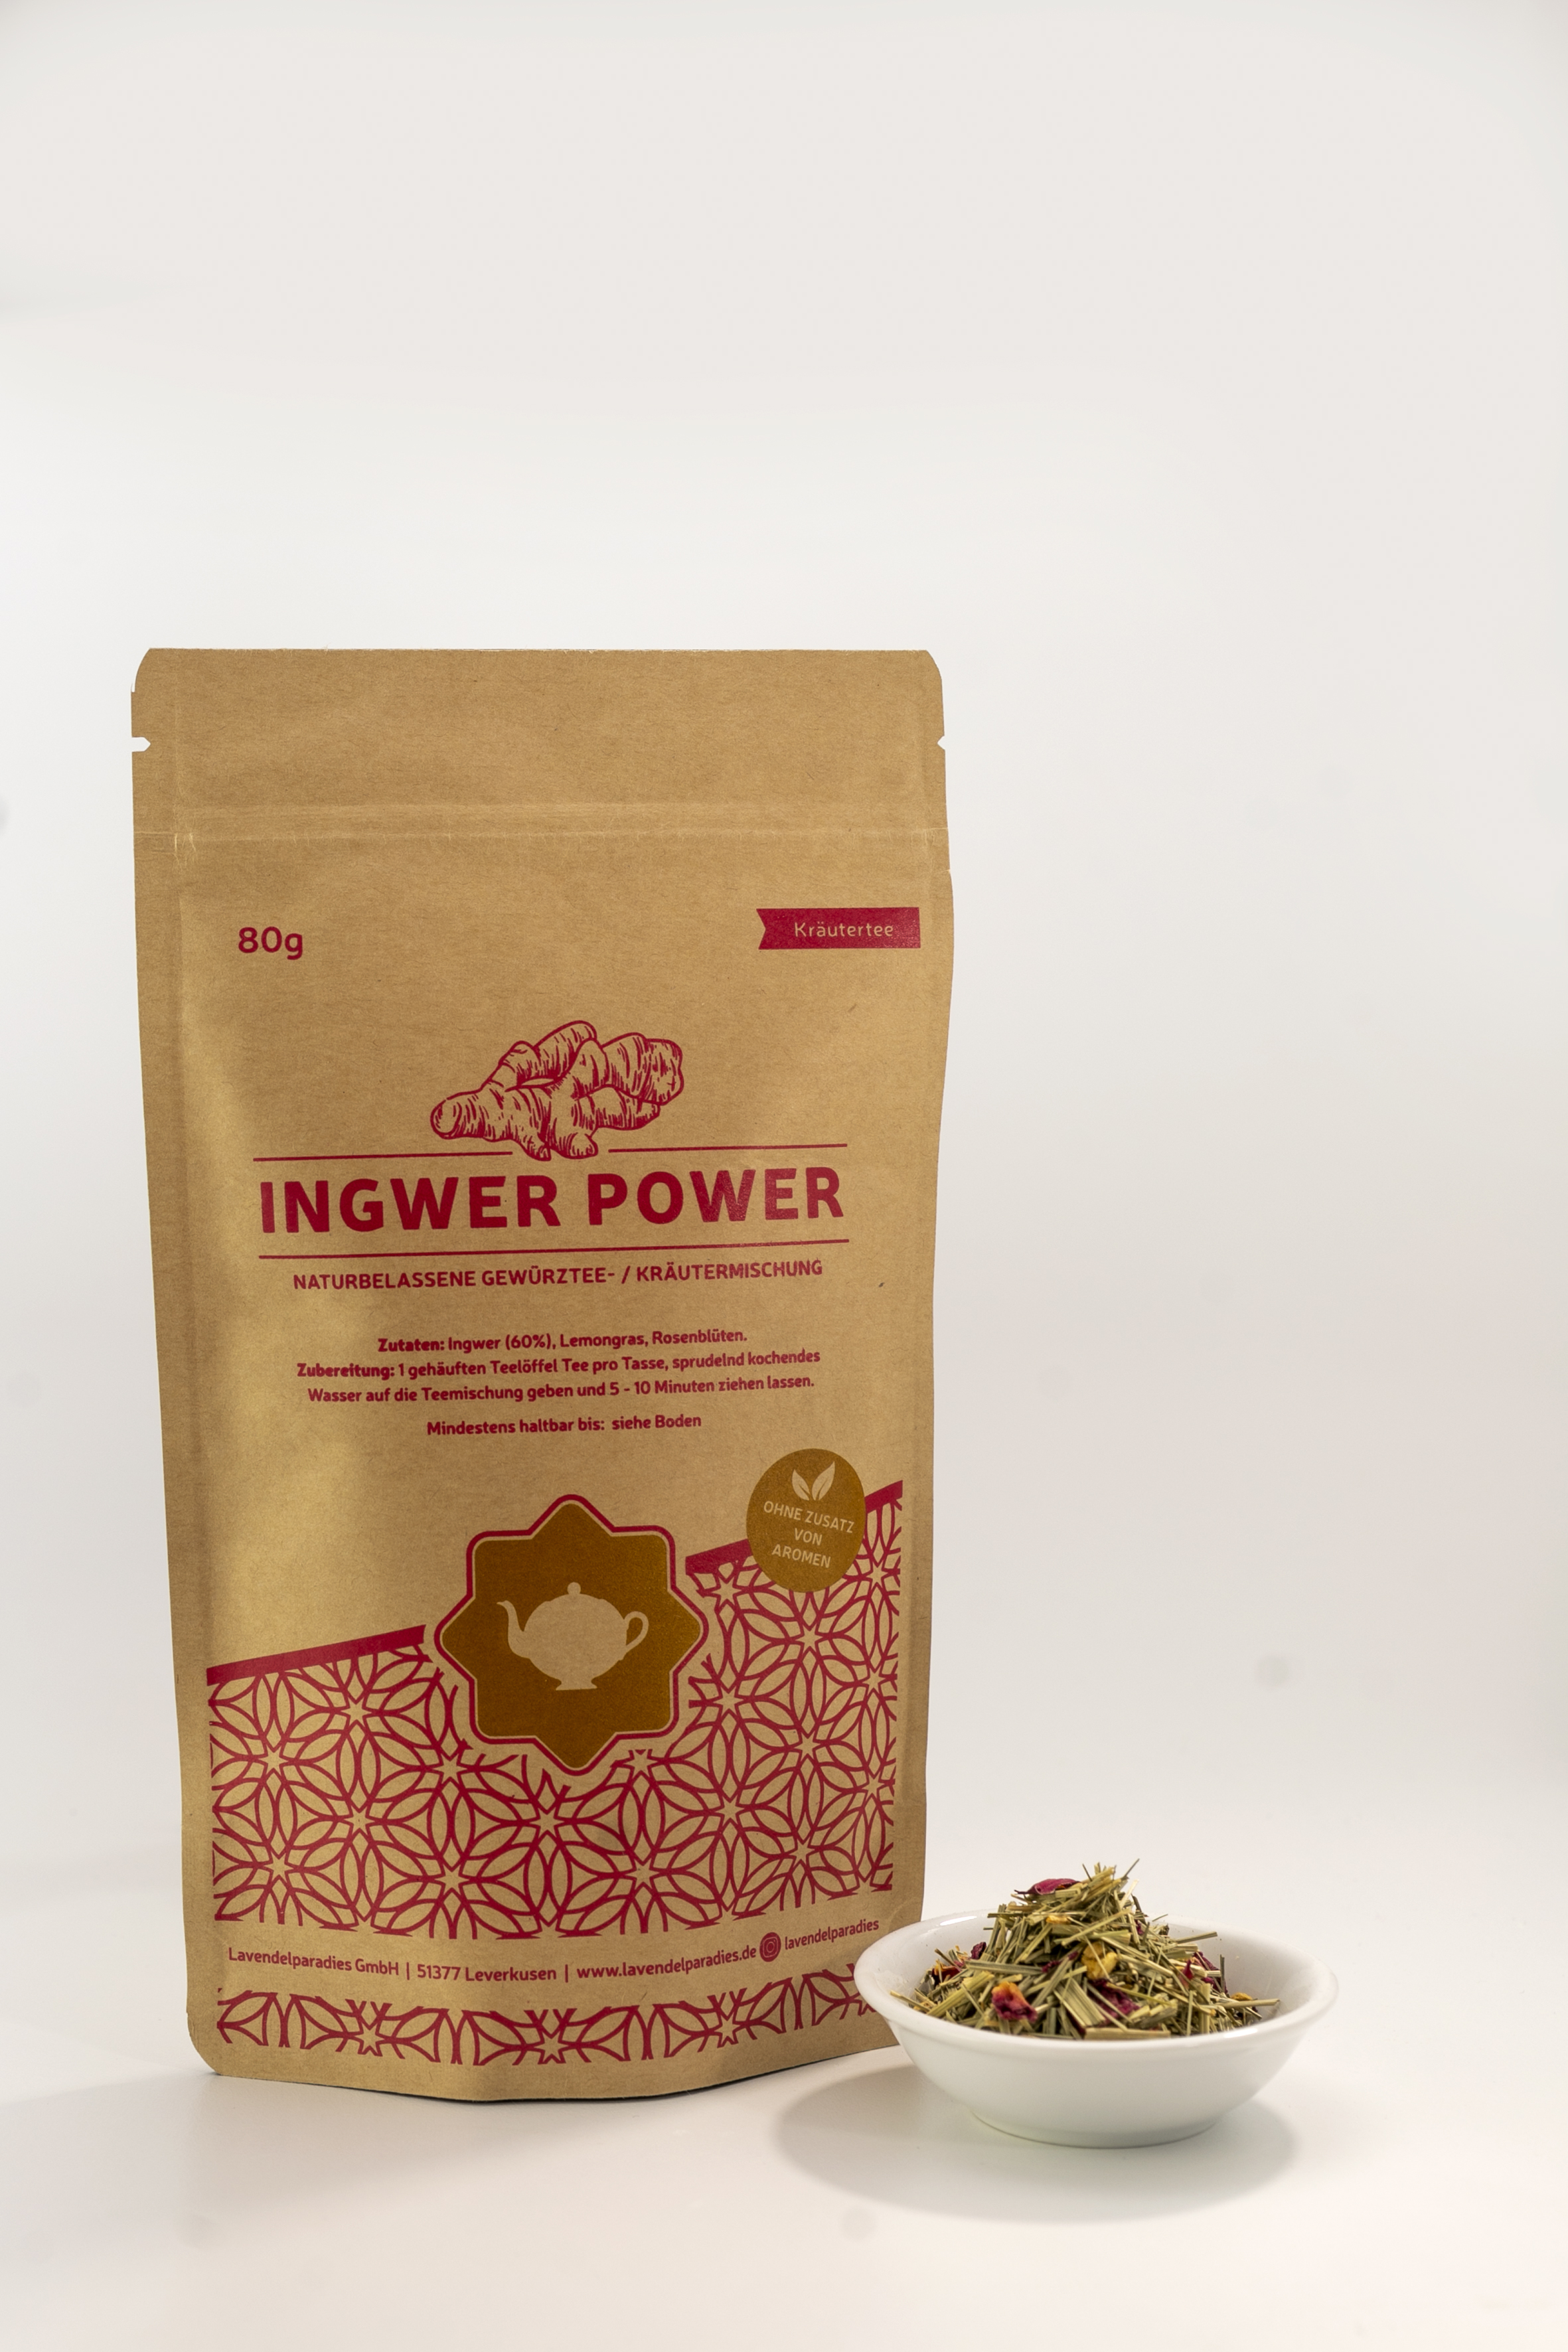 Ingwer Power Ingwertee ayurvedische Vata Mischung 80g | Lavendelparadies